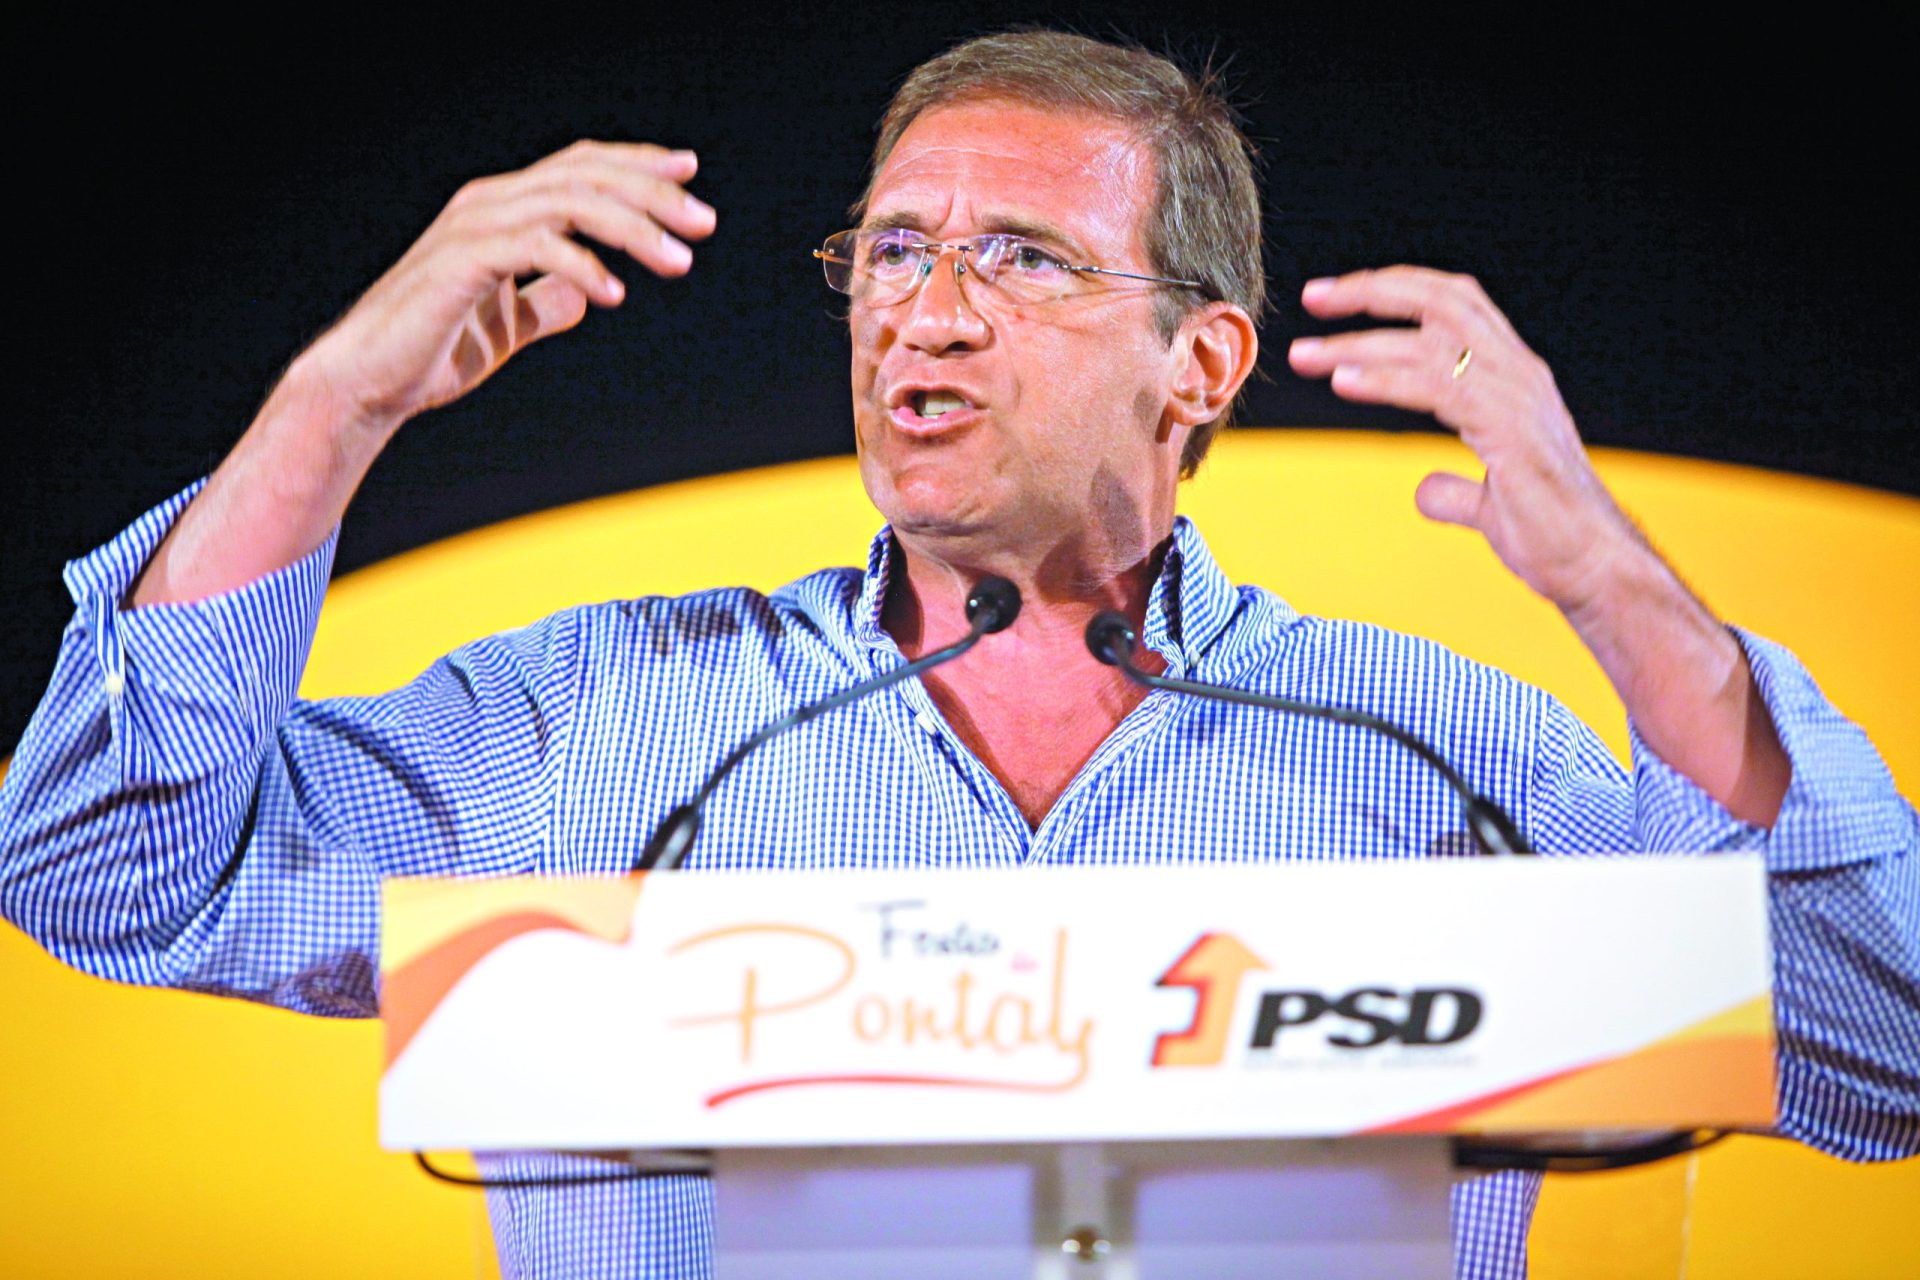 PSD. Críticos  de Passos querem candidatura contra Pedro Pinto em Lisboa